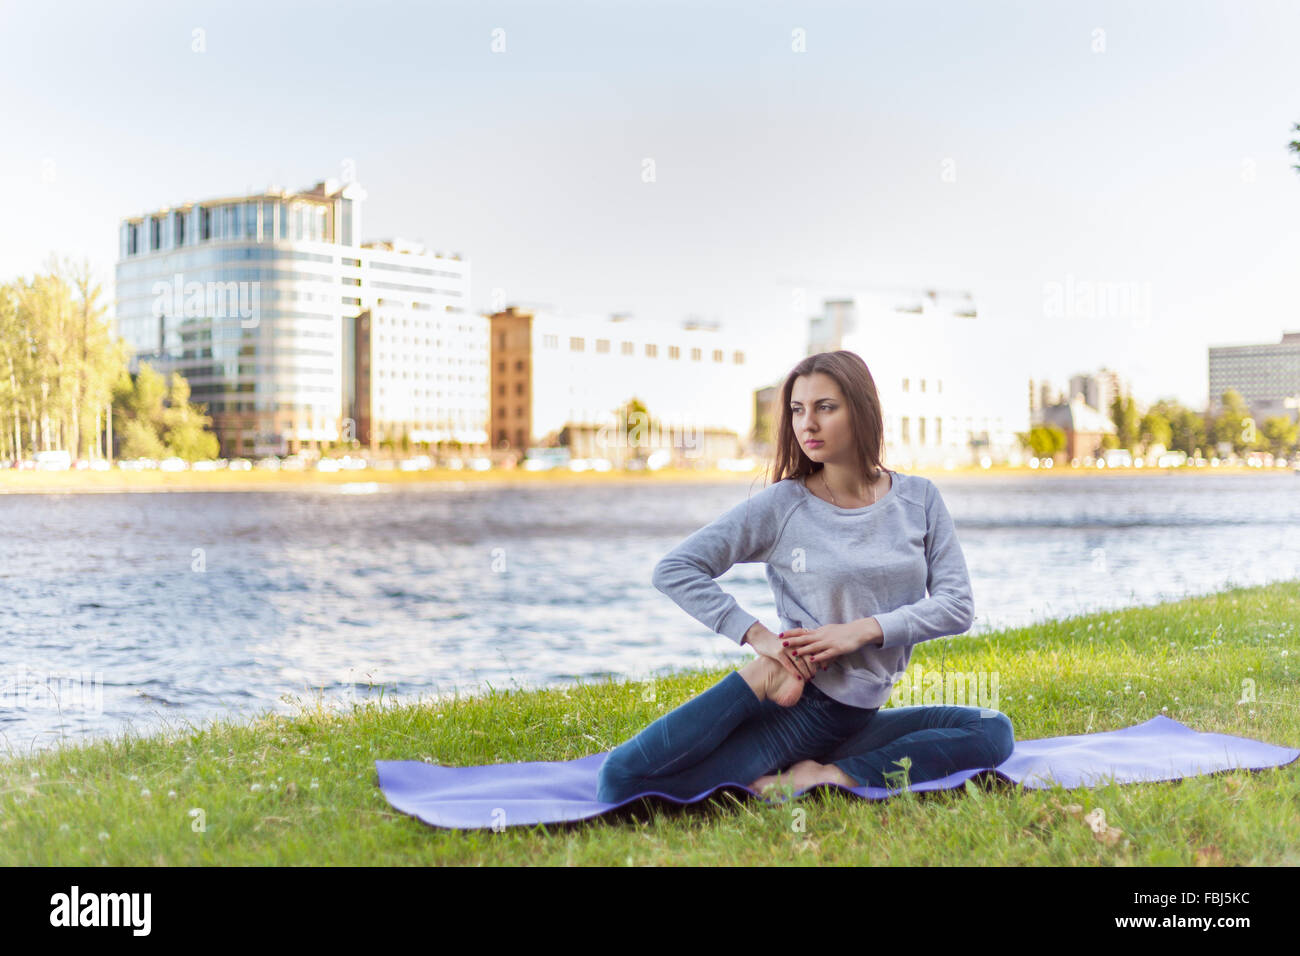 Schöne sportliche ruhige junge Frau arbeiten auf sonnigen Straße, Aufwärmen, stretching-Übungen am Ufer des Flusses im Park, si Stockfoto